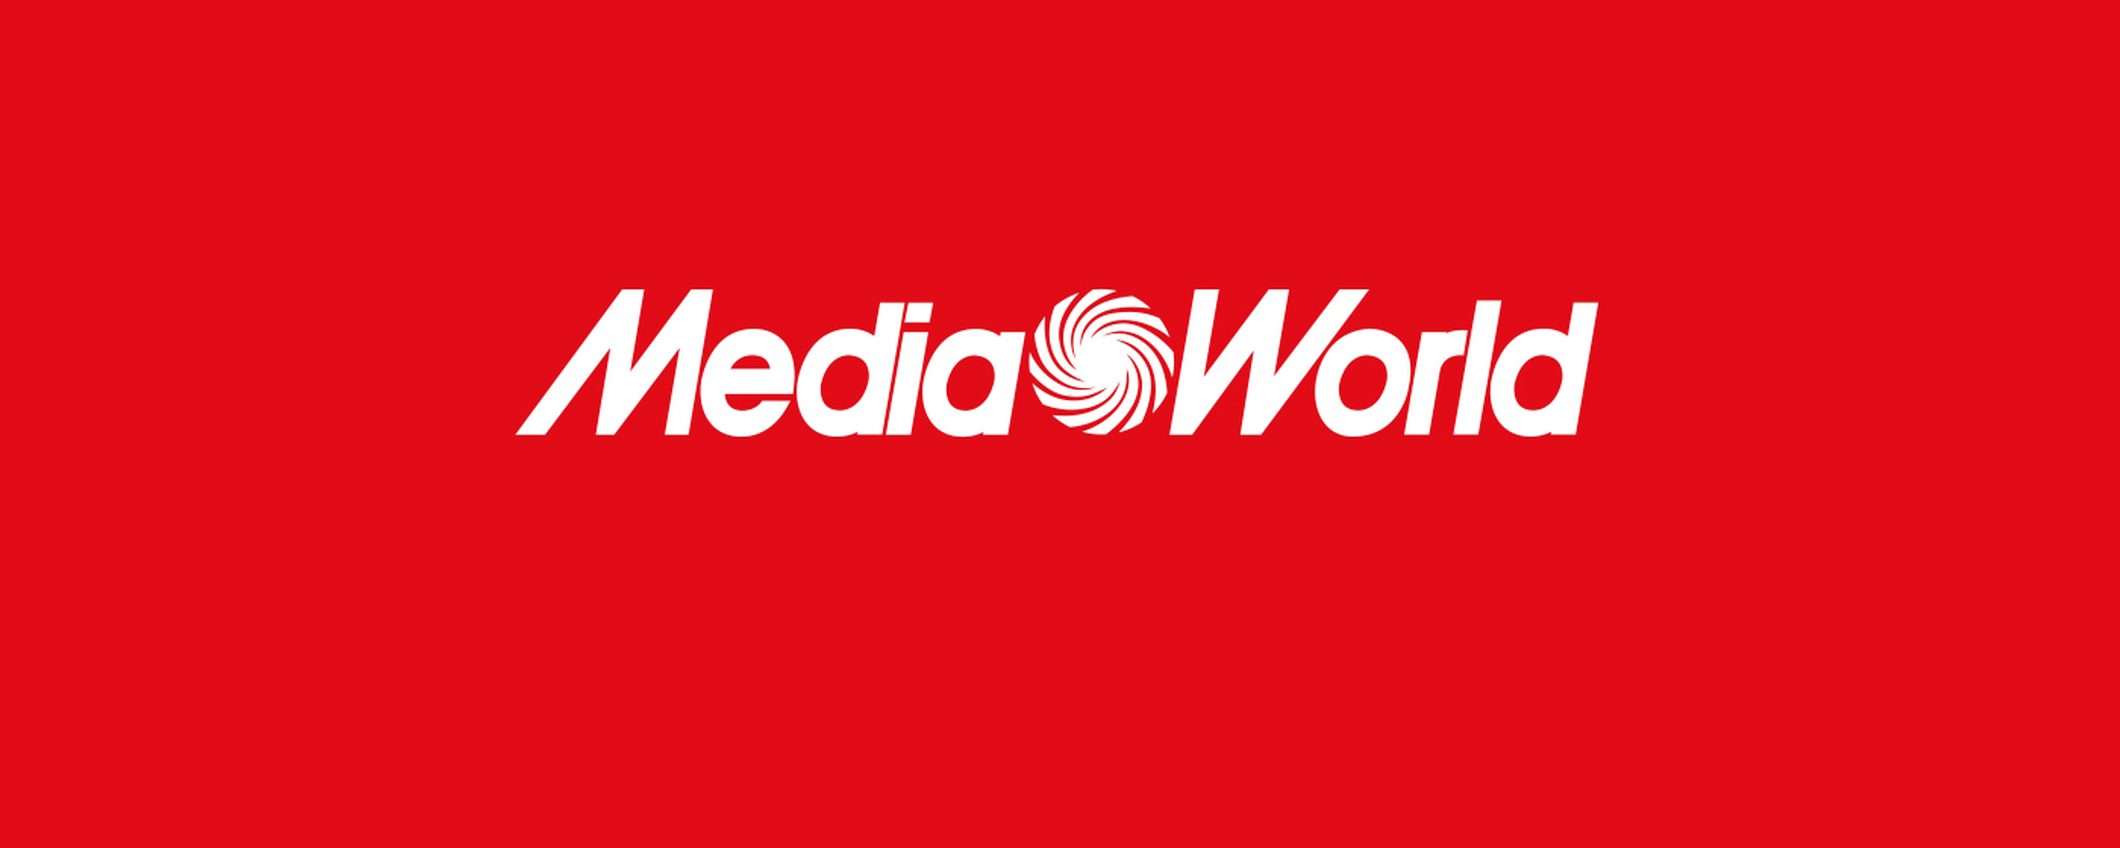 MediaWorld: multa di 3,6 milioni dall'antitrust (update)